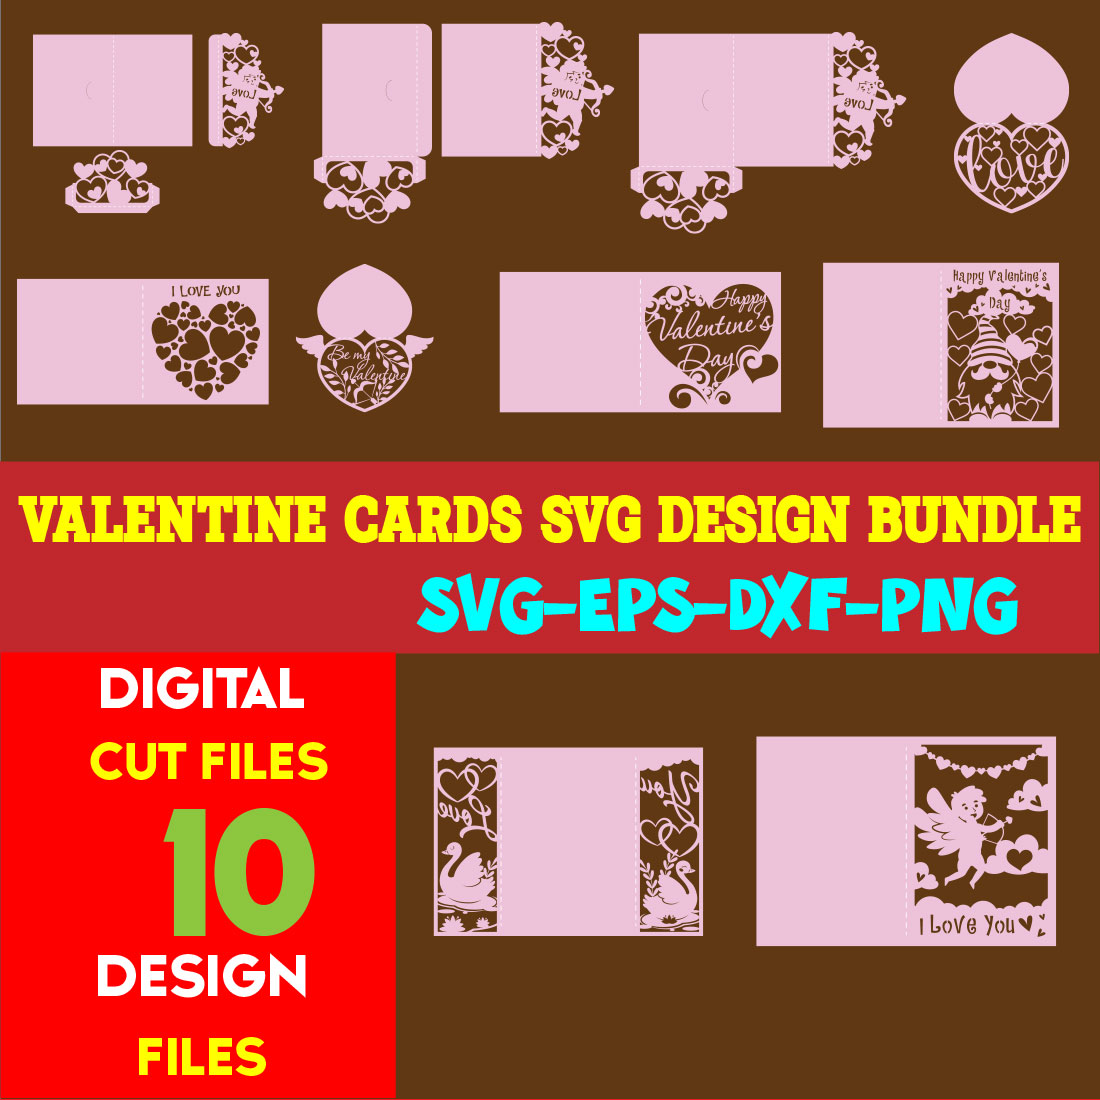 Valentine cards SVG Design Bundle cover image.